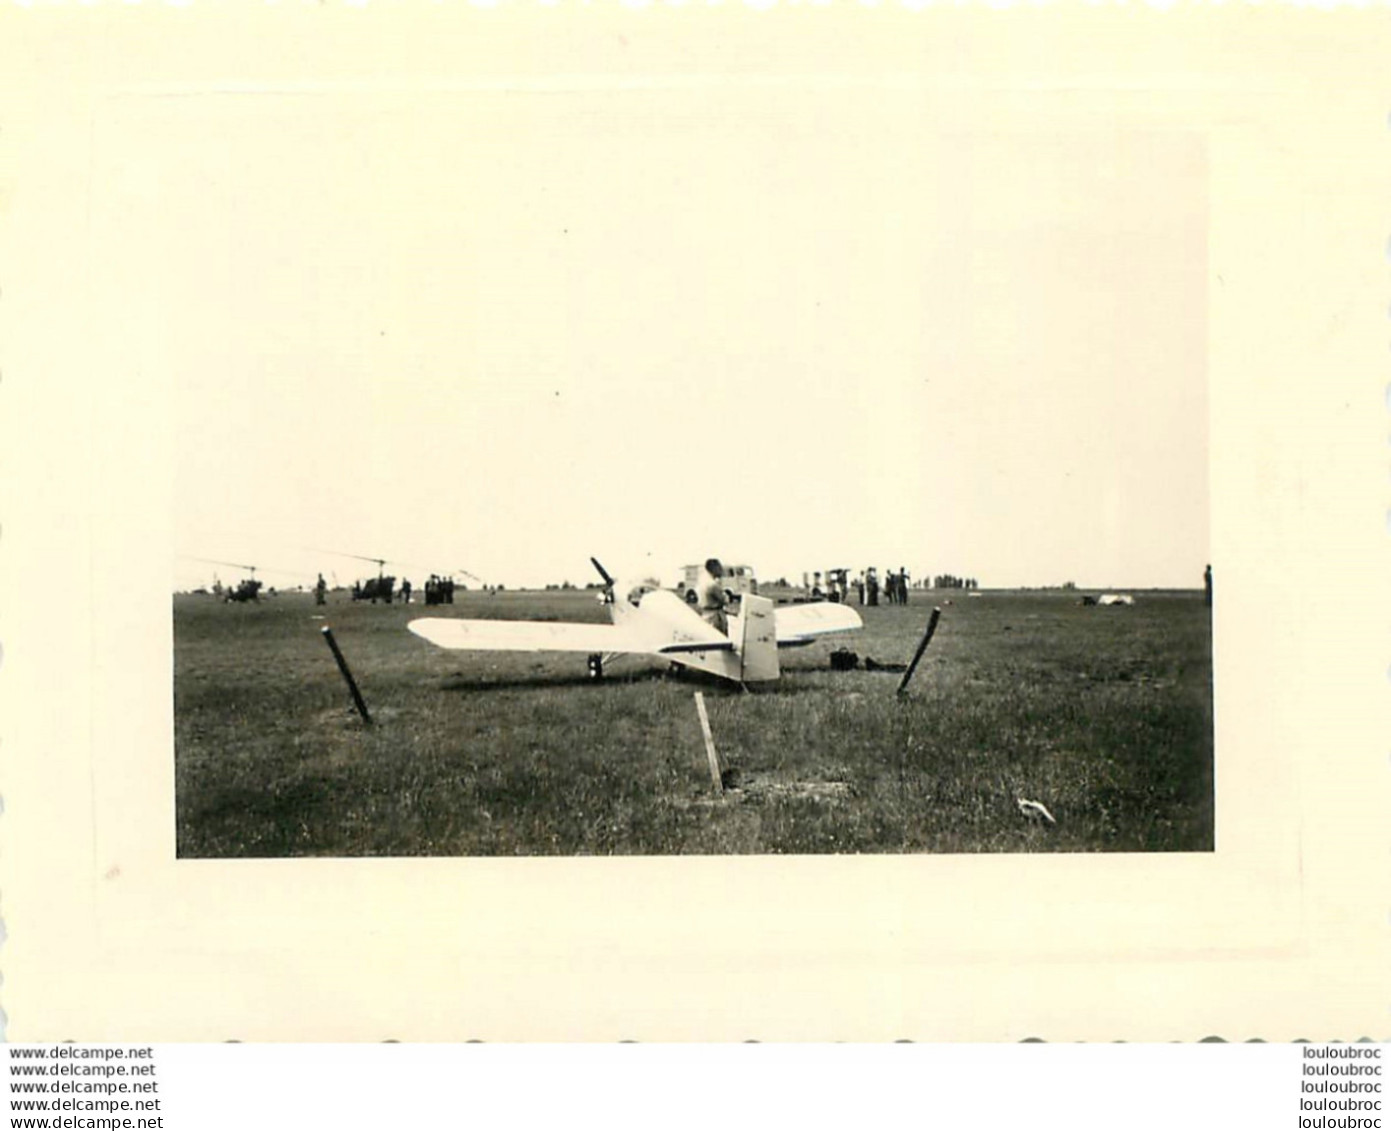 TOUSSUS LE NOBLE 1954  AVION DRUINE TURBULENT  PHOTO 10.50 X 8 CM - Luchtvaart